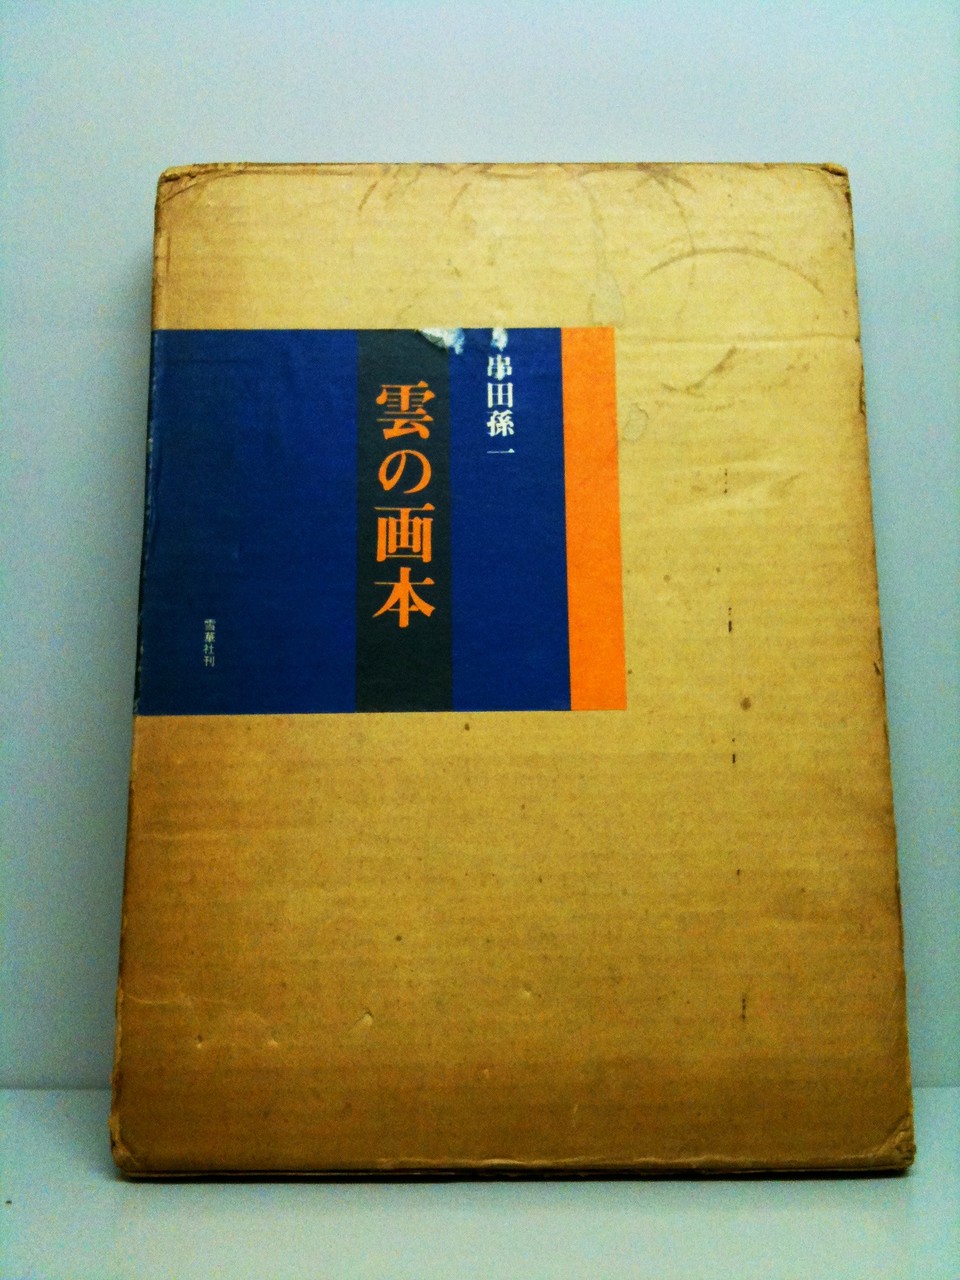 本を選ぶ。 | 札幌の古本屋・書肆吉成の選書日誌:画集